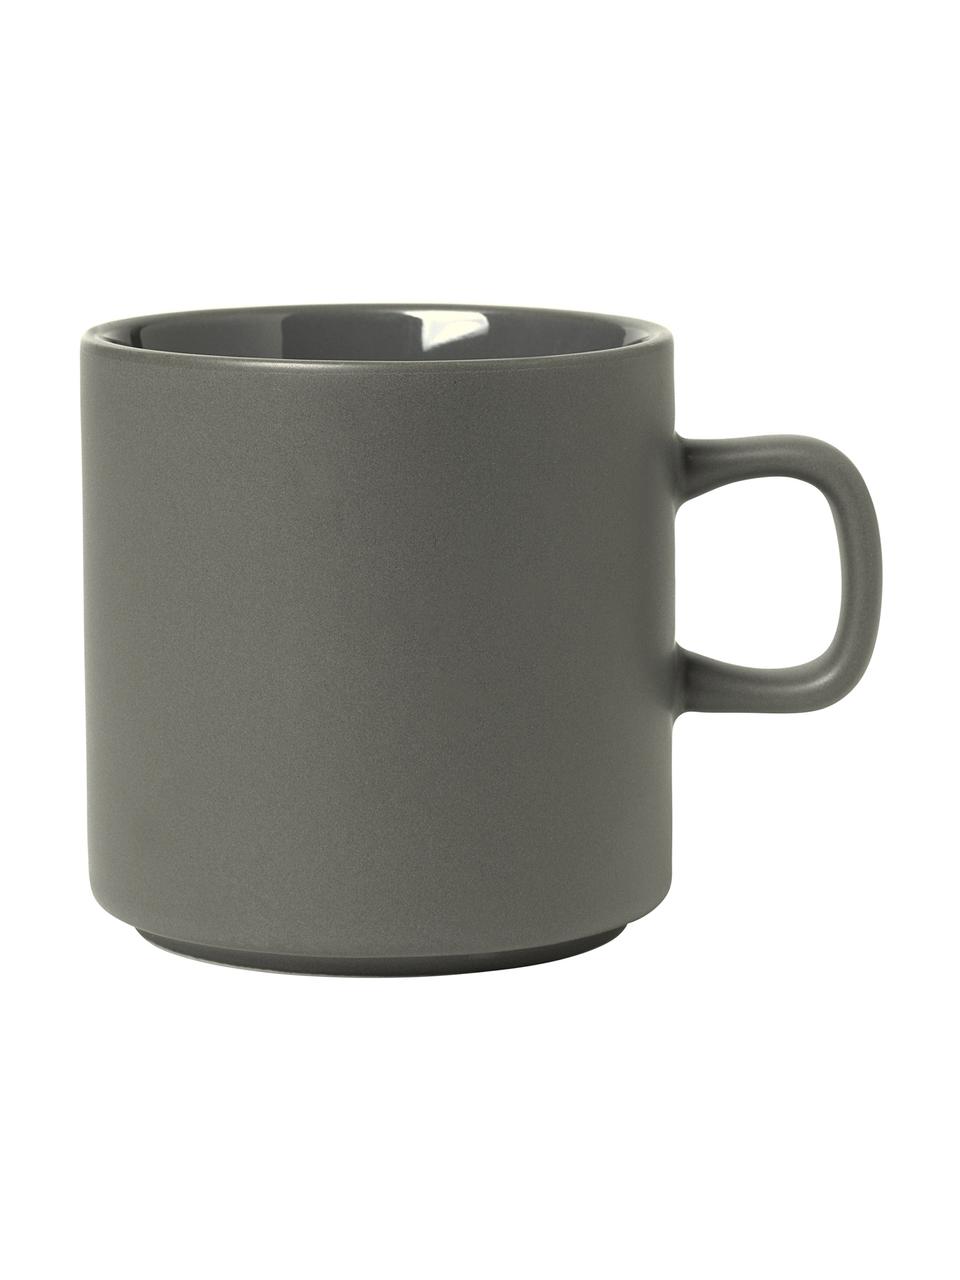 Tazza caffè color grigio scuro opaco/lucido Pliar 6 pz, Ceramica, Grigio scuro, Ø 9 x Alt. 9 cm, 250 ml